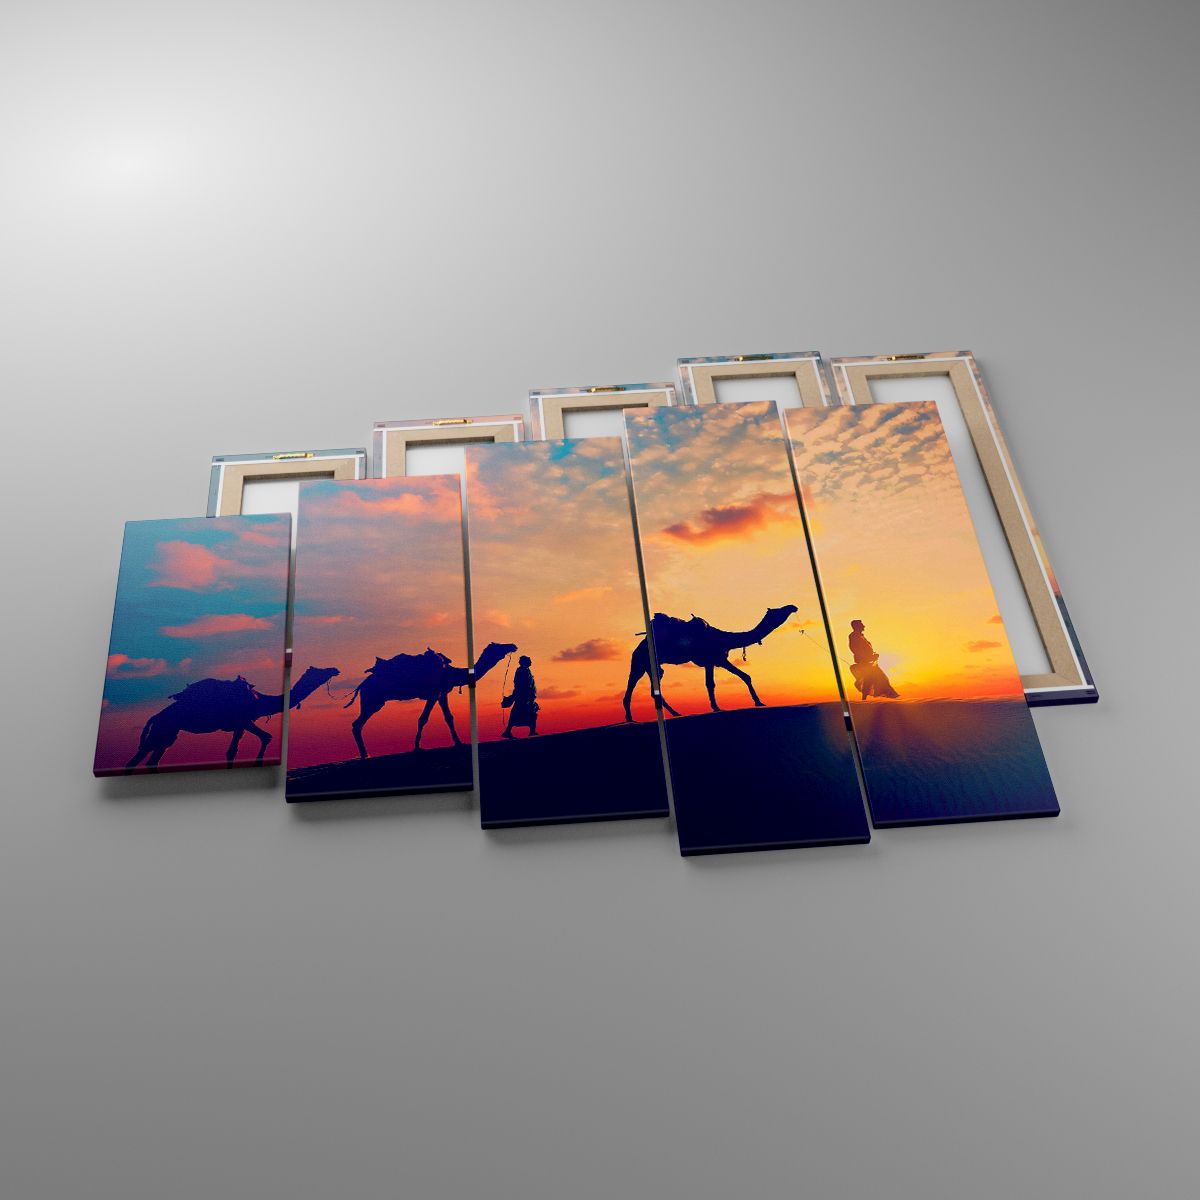 Obrazy Krajobraz, Obrazy Pustynia, Obrazy Wielbłąd, Obrazy Safari, Obrazy Zachód Słońca